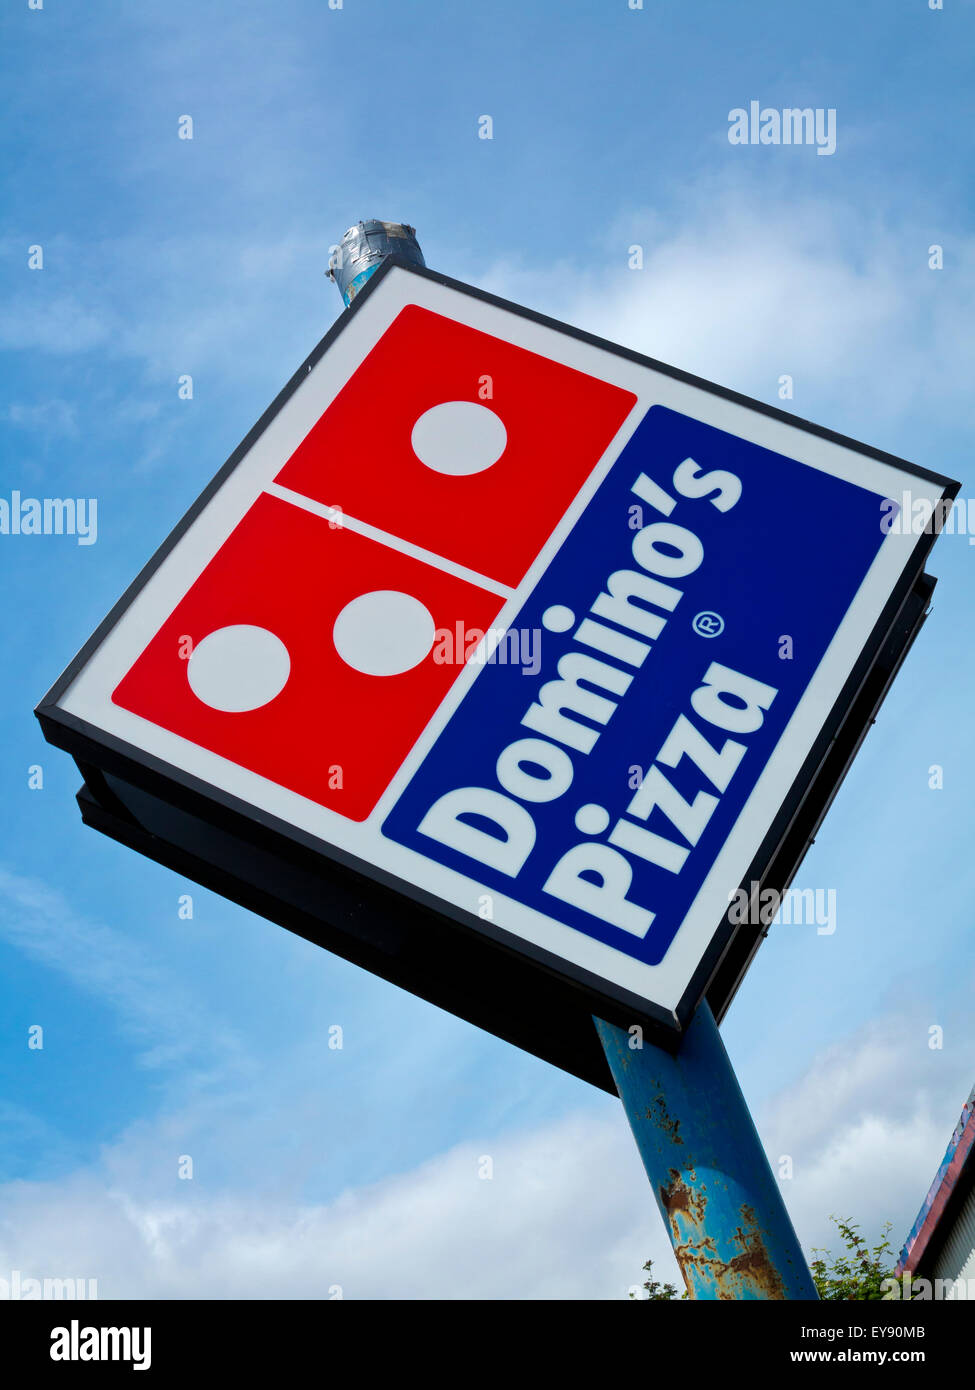 Domino's Pizza affiche à l'extérieur d'une succursale de la chaîne de restauration rapide internationale créée aux Etats-Unis en 1960 Banque D'Images